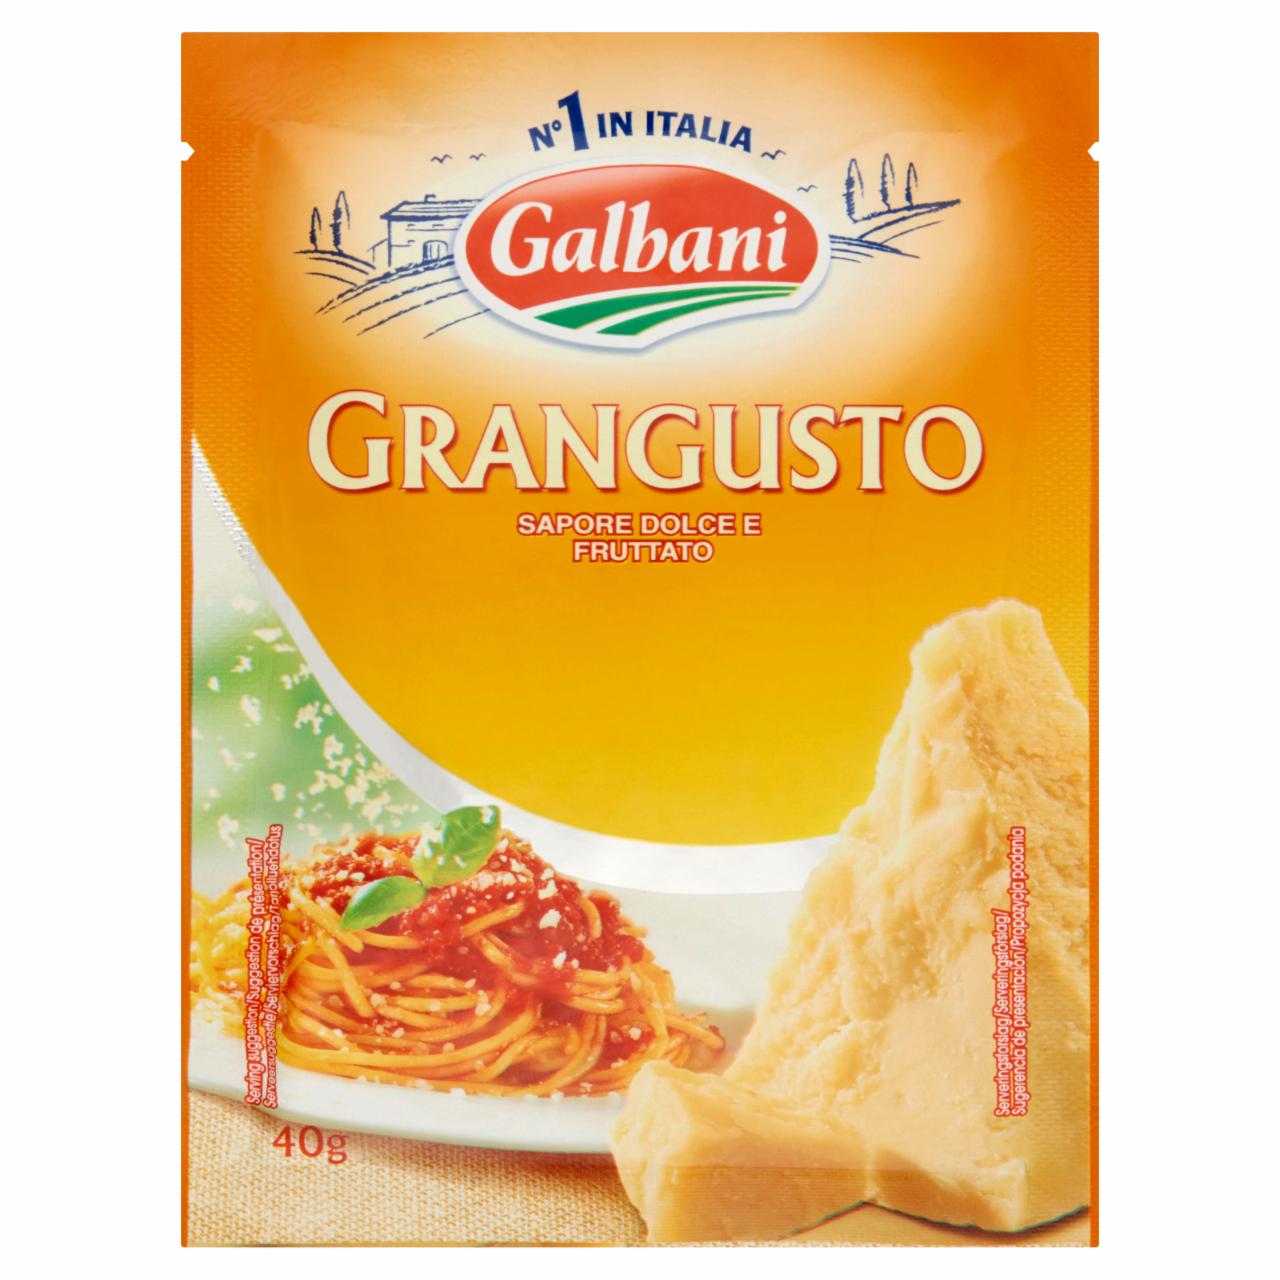 Képek - Galbani Grangusto reszelt sajtkeverék 40 g